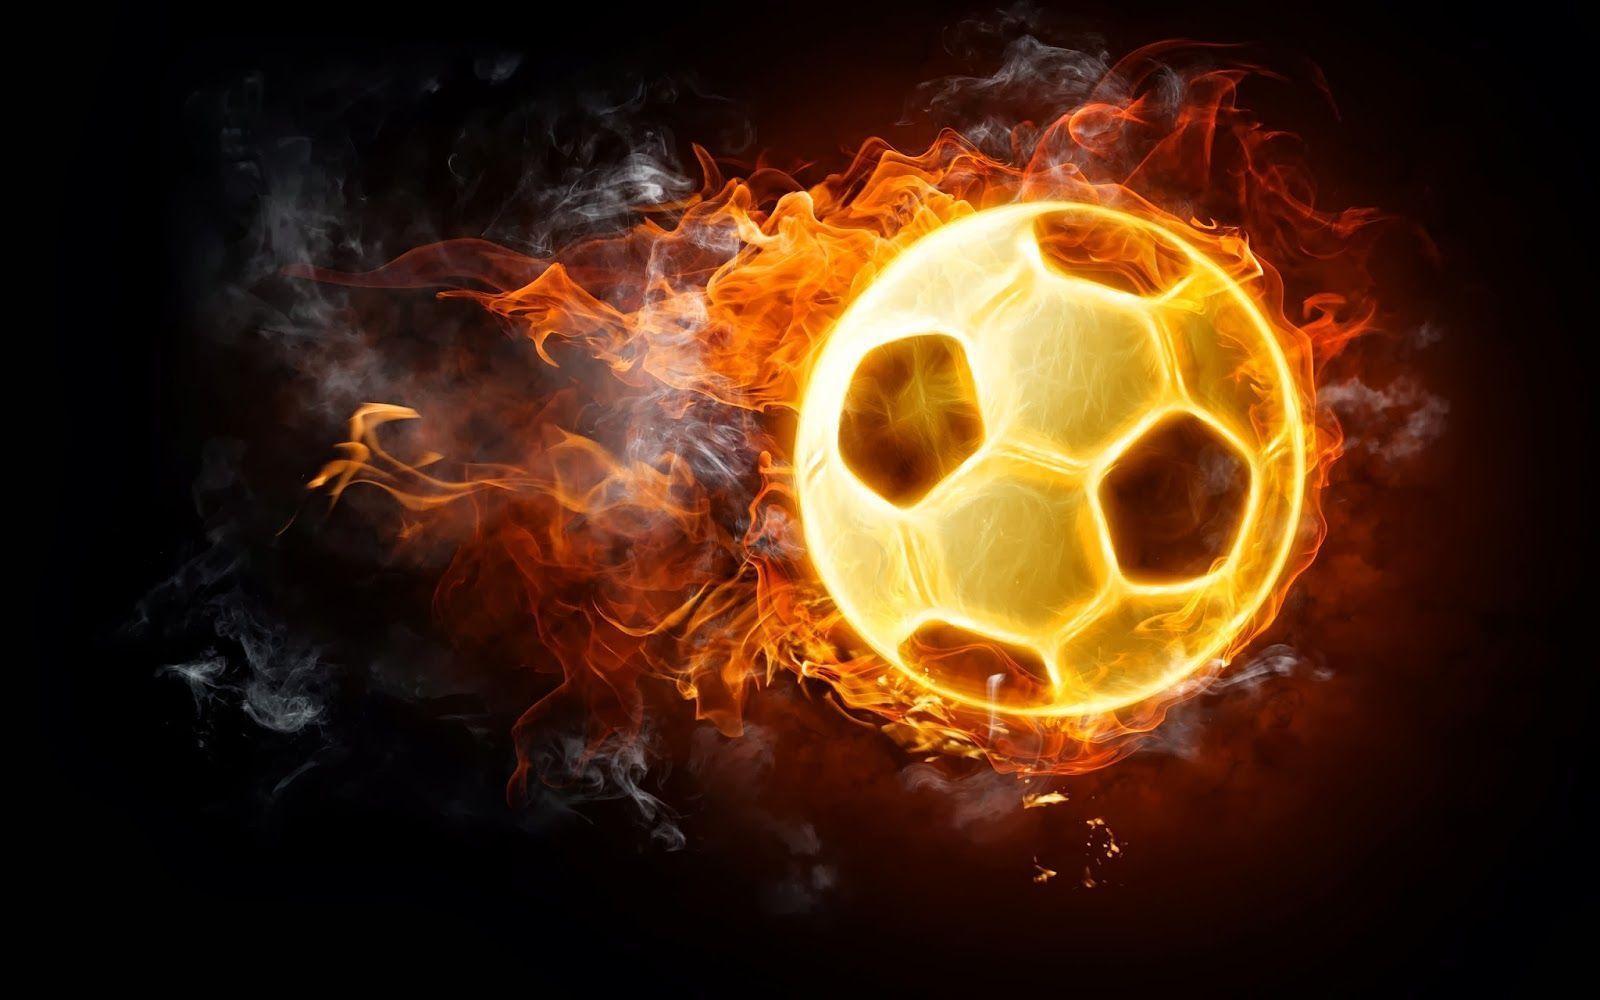 Burning soccer ball image for wallpaper